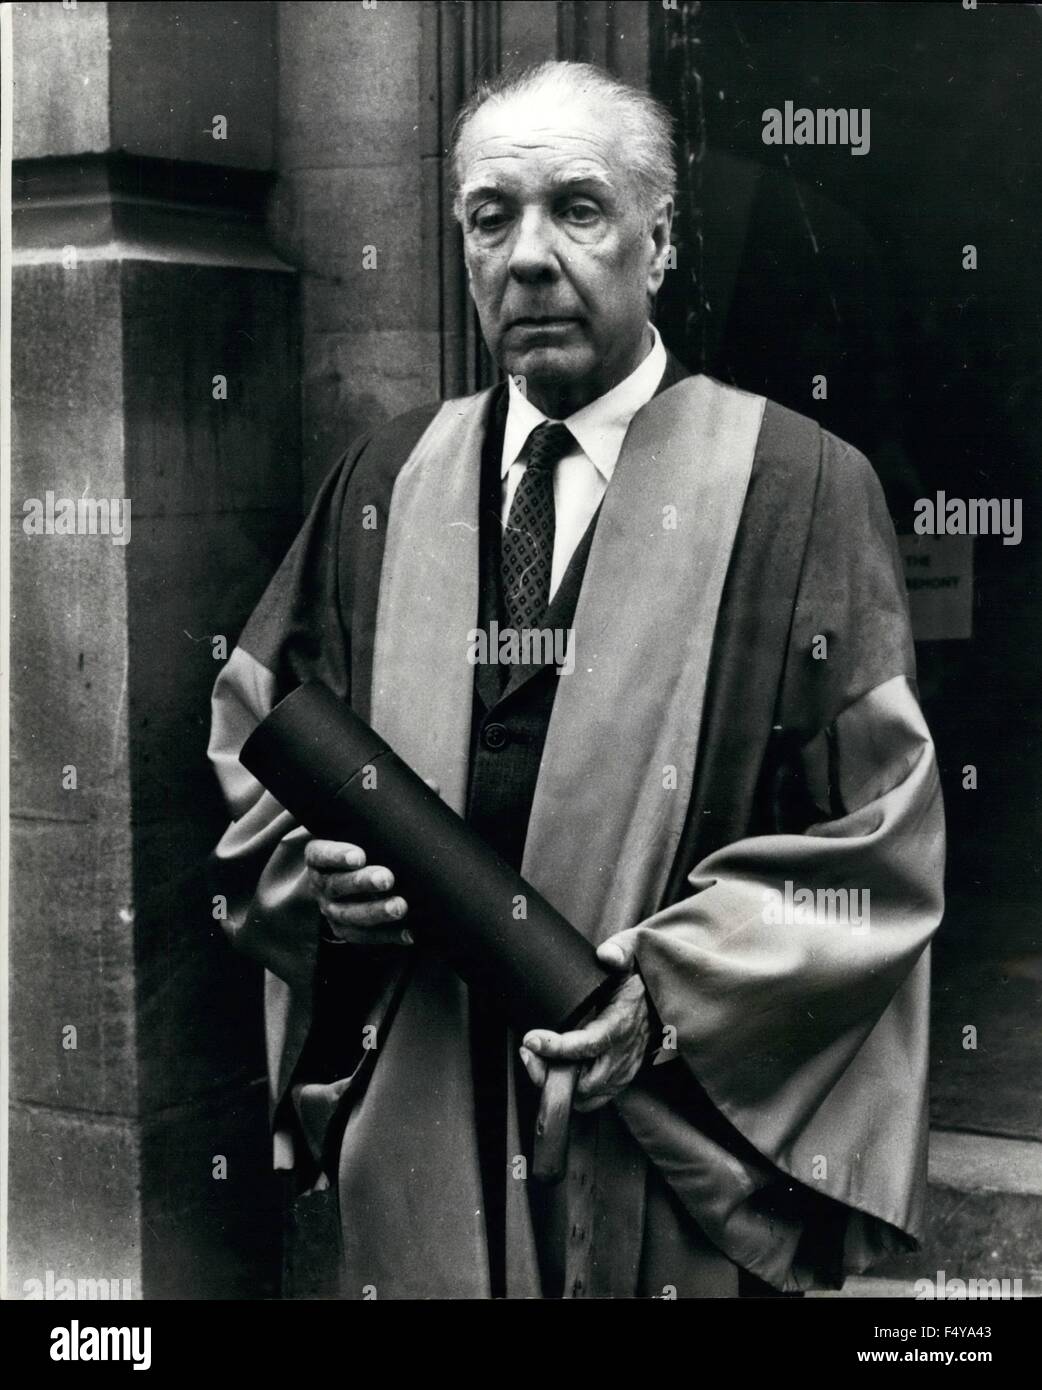 1968 - El escritor y poeta argentino Ciego recibe doctorado honorario de  letras de la Universidad de Oxford: Jorge Luis Borges, a los 71 años de  edad, escritor y poeta de Argentina,